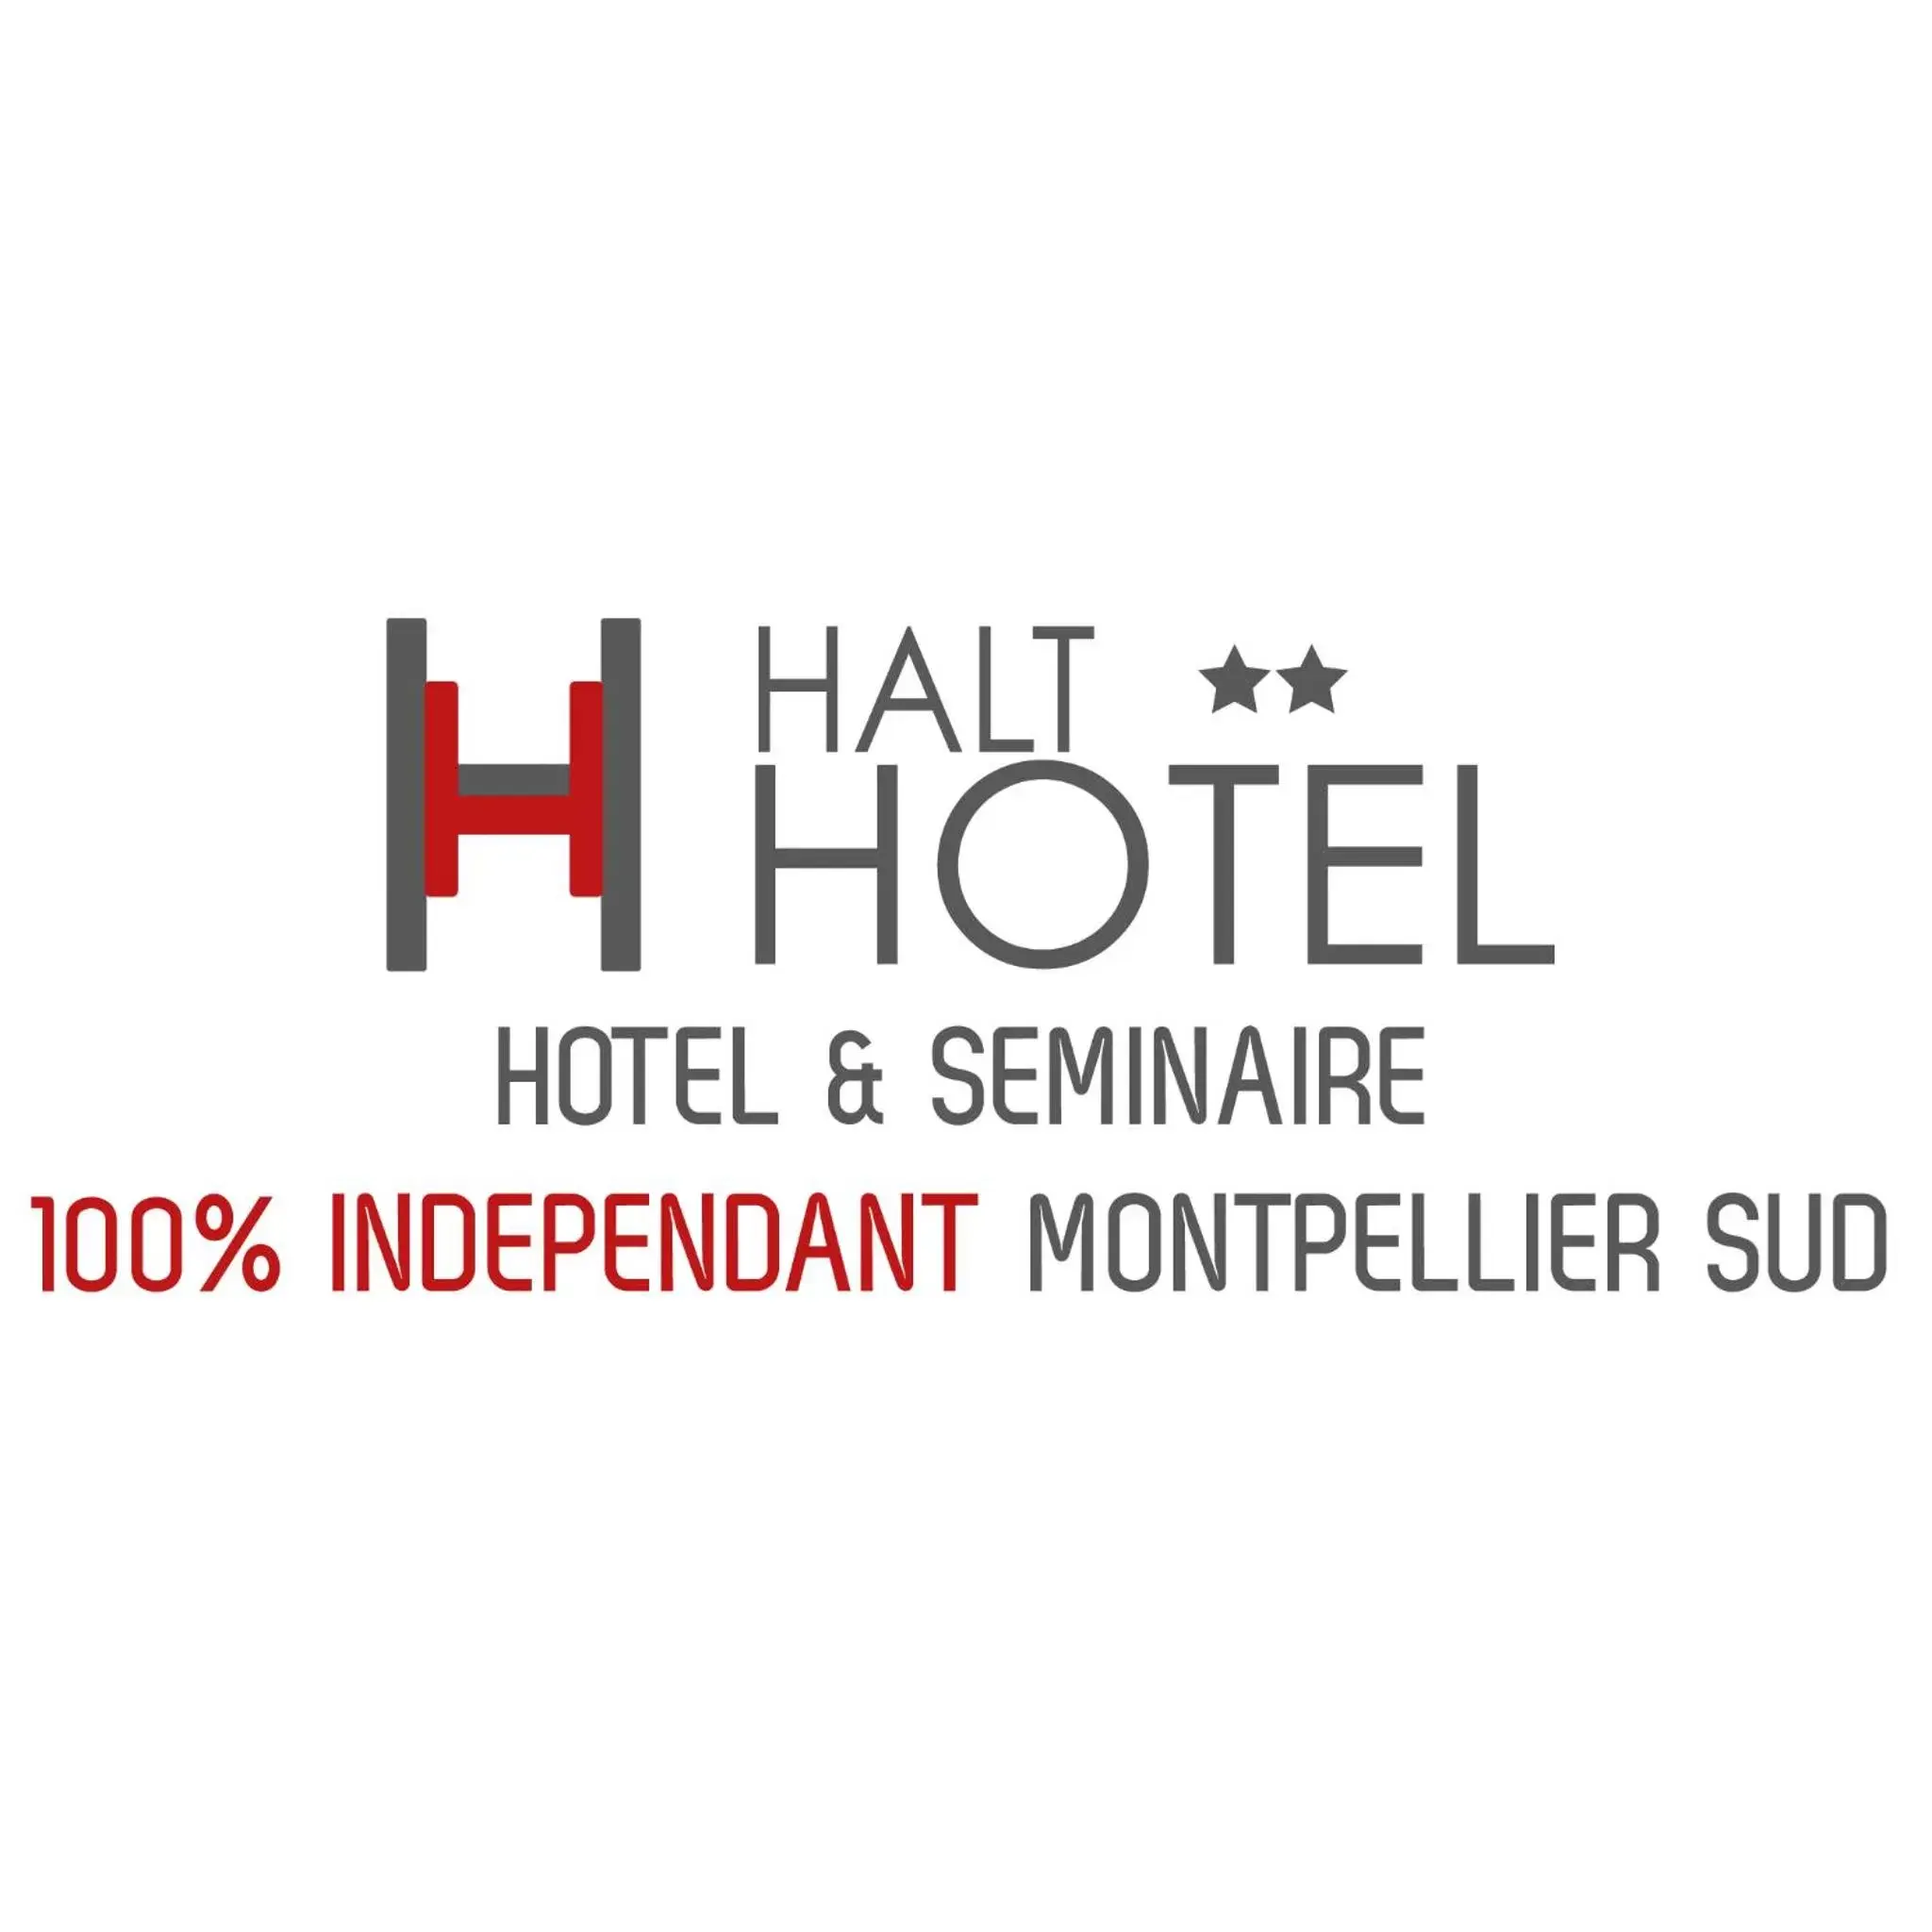 Property logo or sign, Property Logo/Sign in HALT HOTEL - Choisissez l'Hôtellerie Indépendante